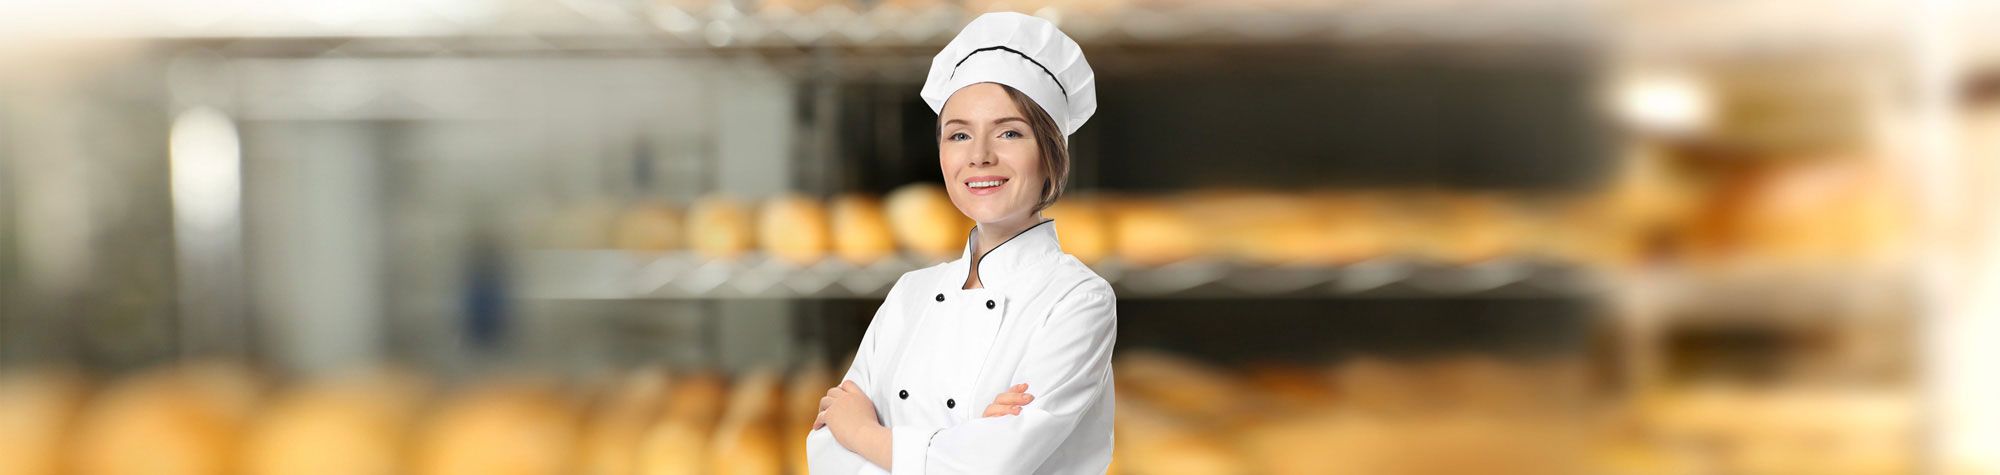 Trabajadora en una panadería